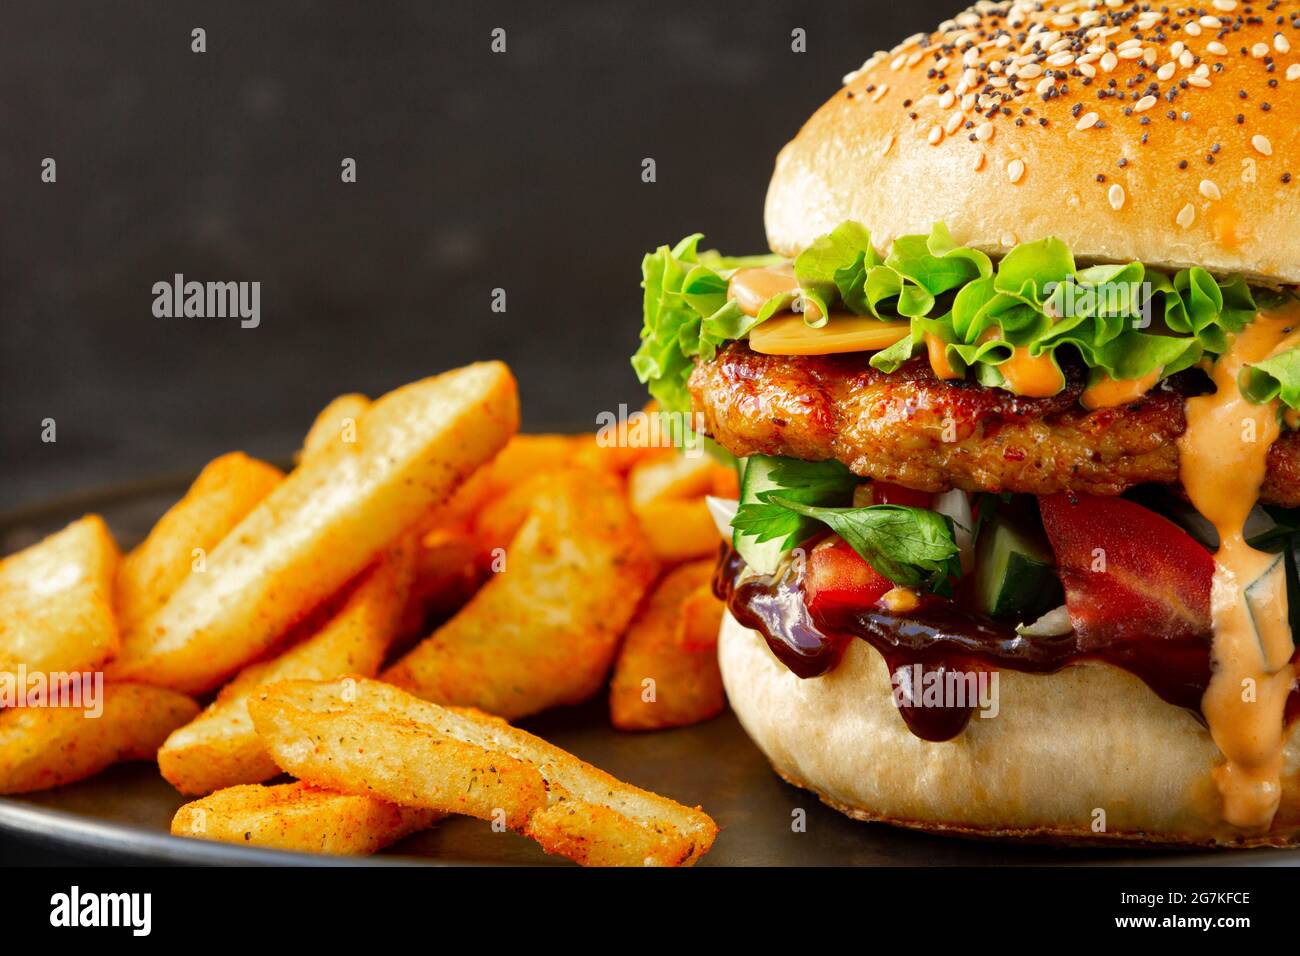 Gros plan de délicieux hamburger de poulet frais accompagné de frites Banque D'Images